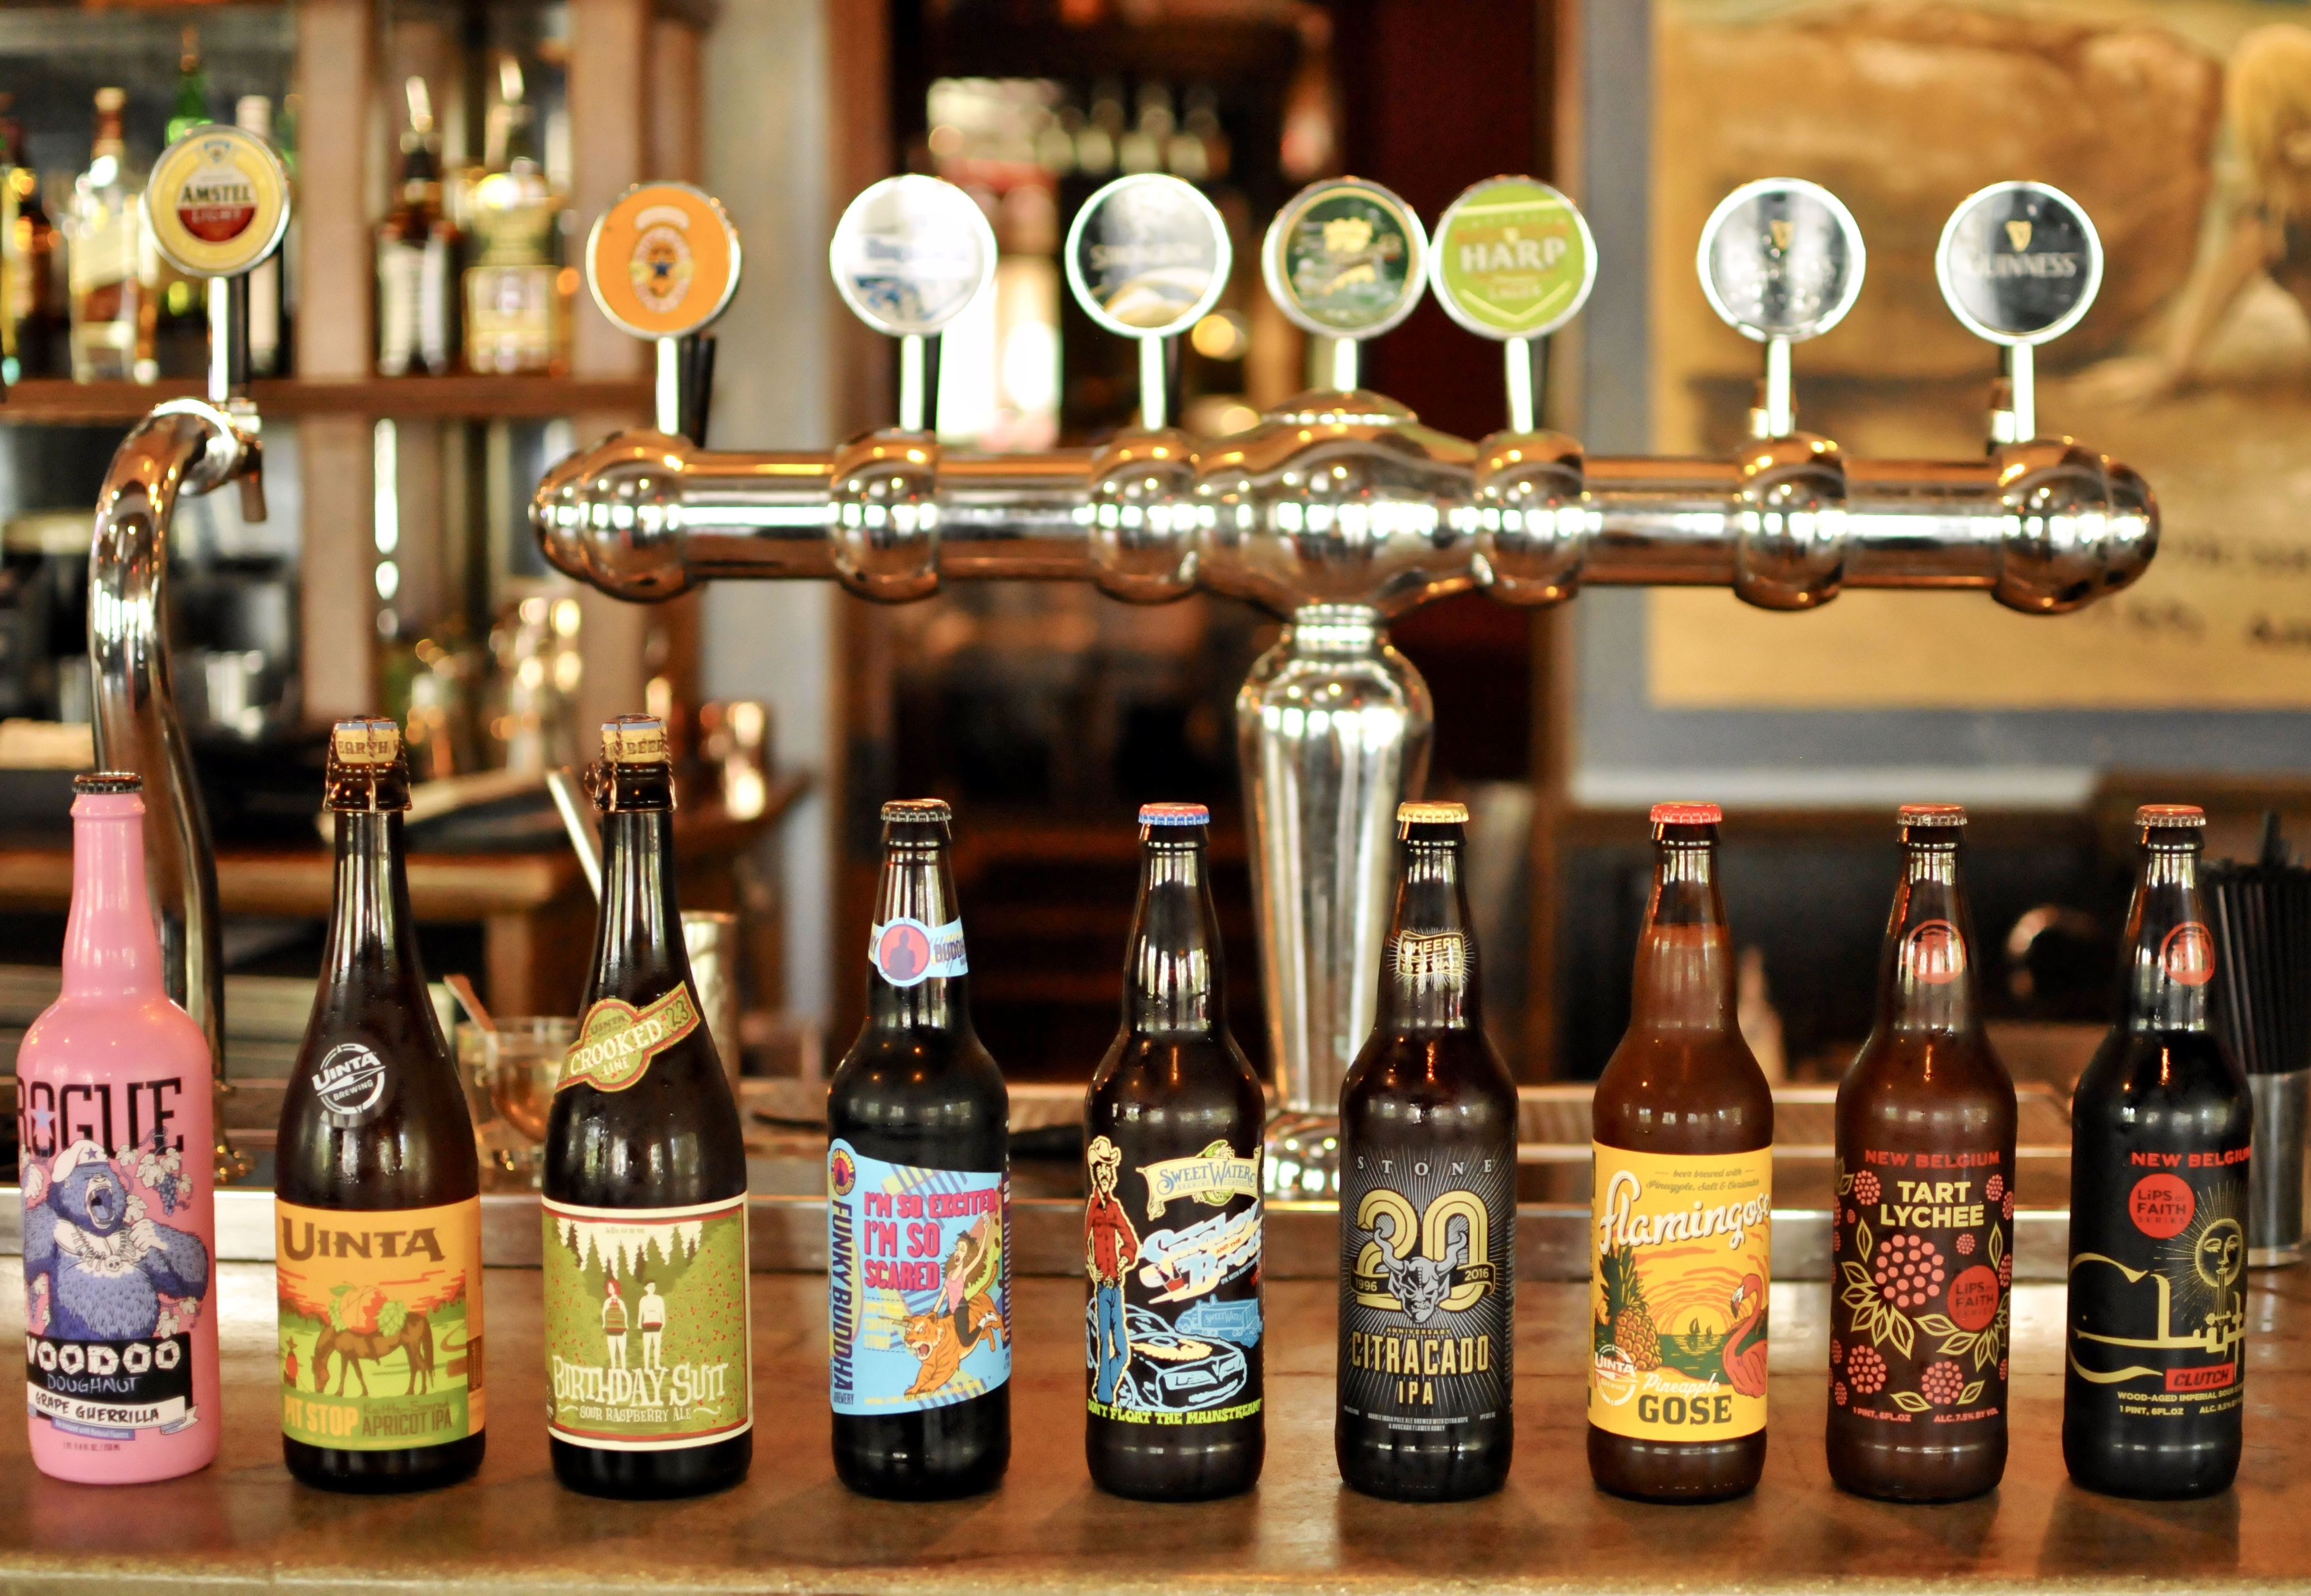 craft beer bottles lined up on a bar